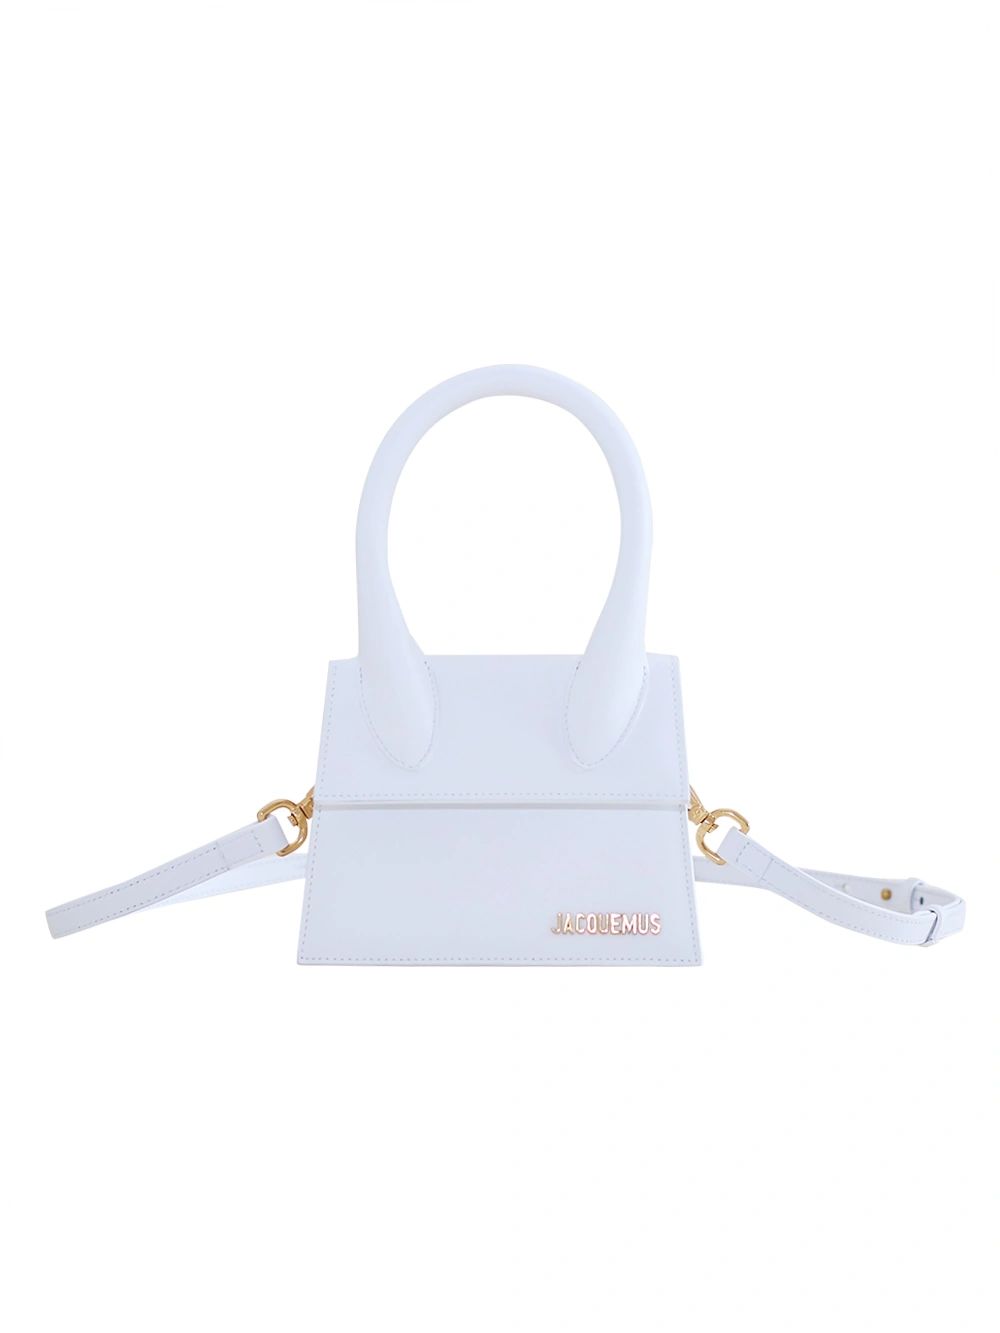 White Le Chiquito Moyen Handbag | The Webster